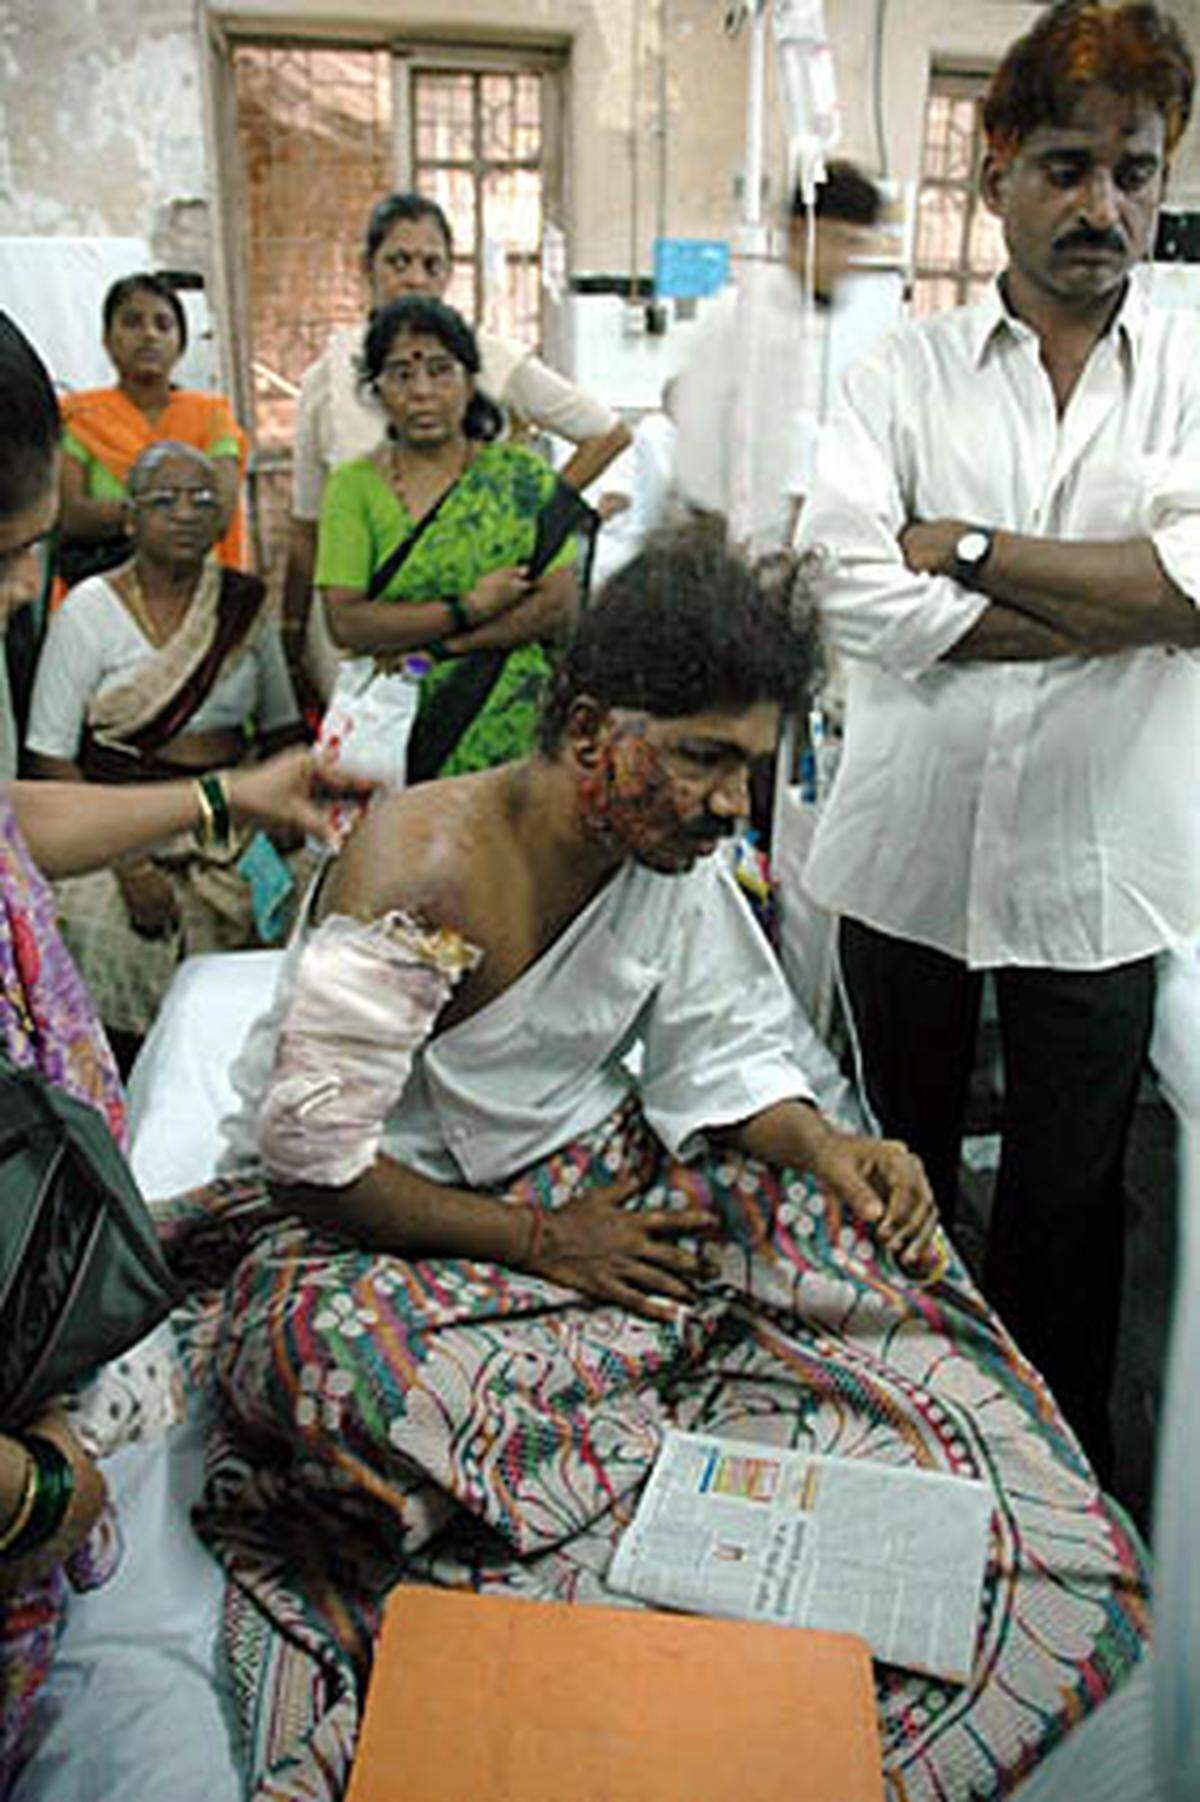 In der westindischen Millionen-Metropole Bombay (Mumbai) explodieren in voll besetzten Vorortzügen und auf Bahnhöfen sieben Bomben. Bei der Anschlagserie kommen 187 Menschen ums Leben. Mehr als 700 werden verletzt.